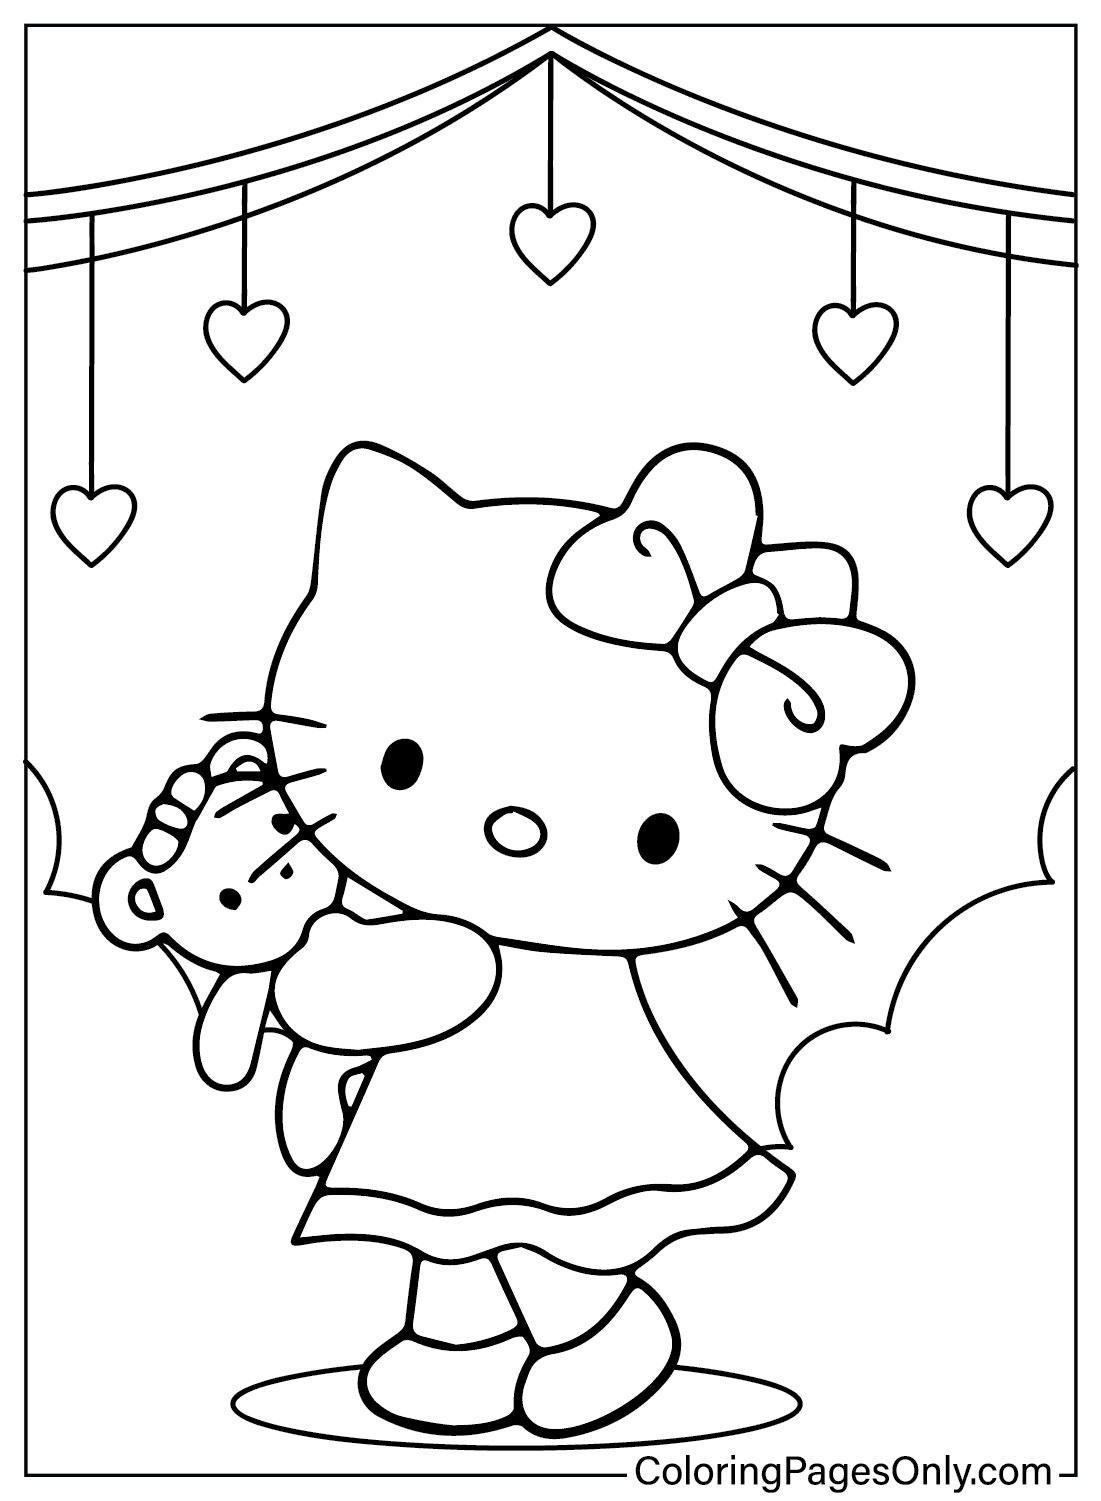 Linda página para colorear de Hello Kitty de Hello Kitty